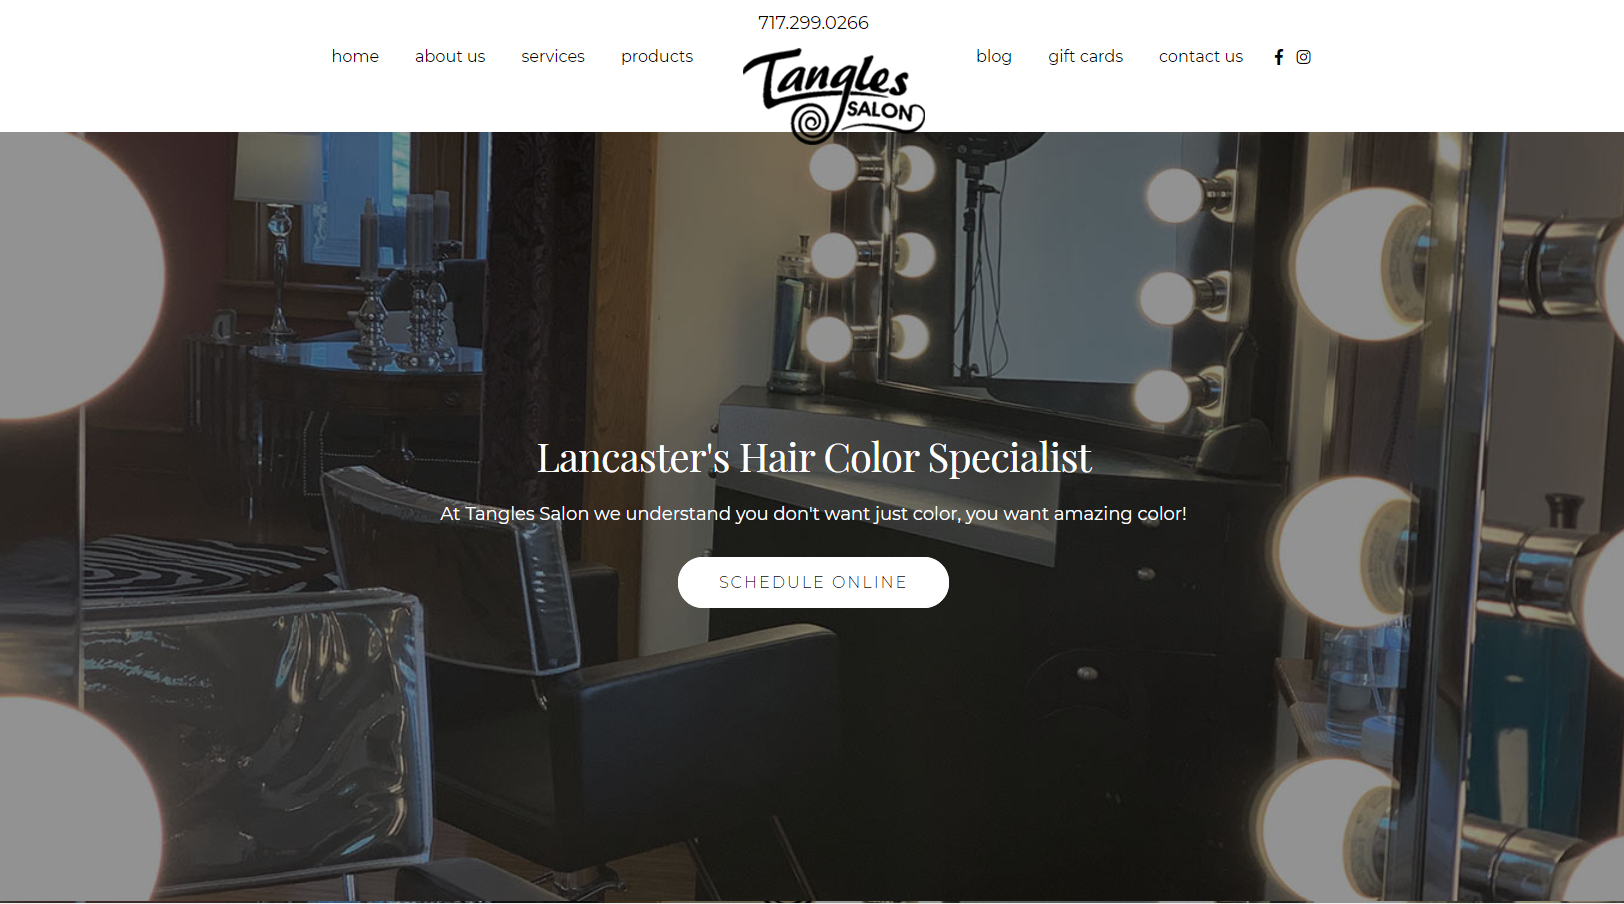 EZMarketing Designs &amp; Develops New Website for Tangl'